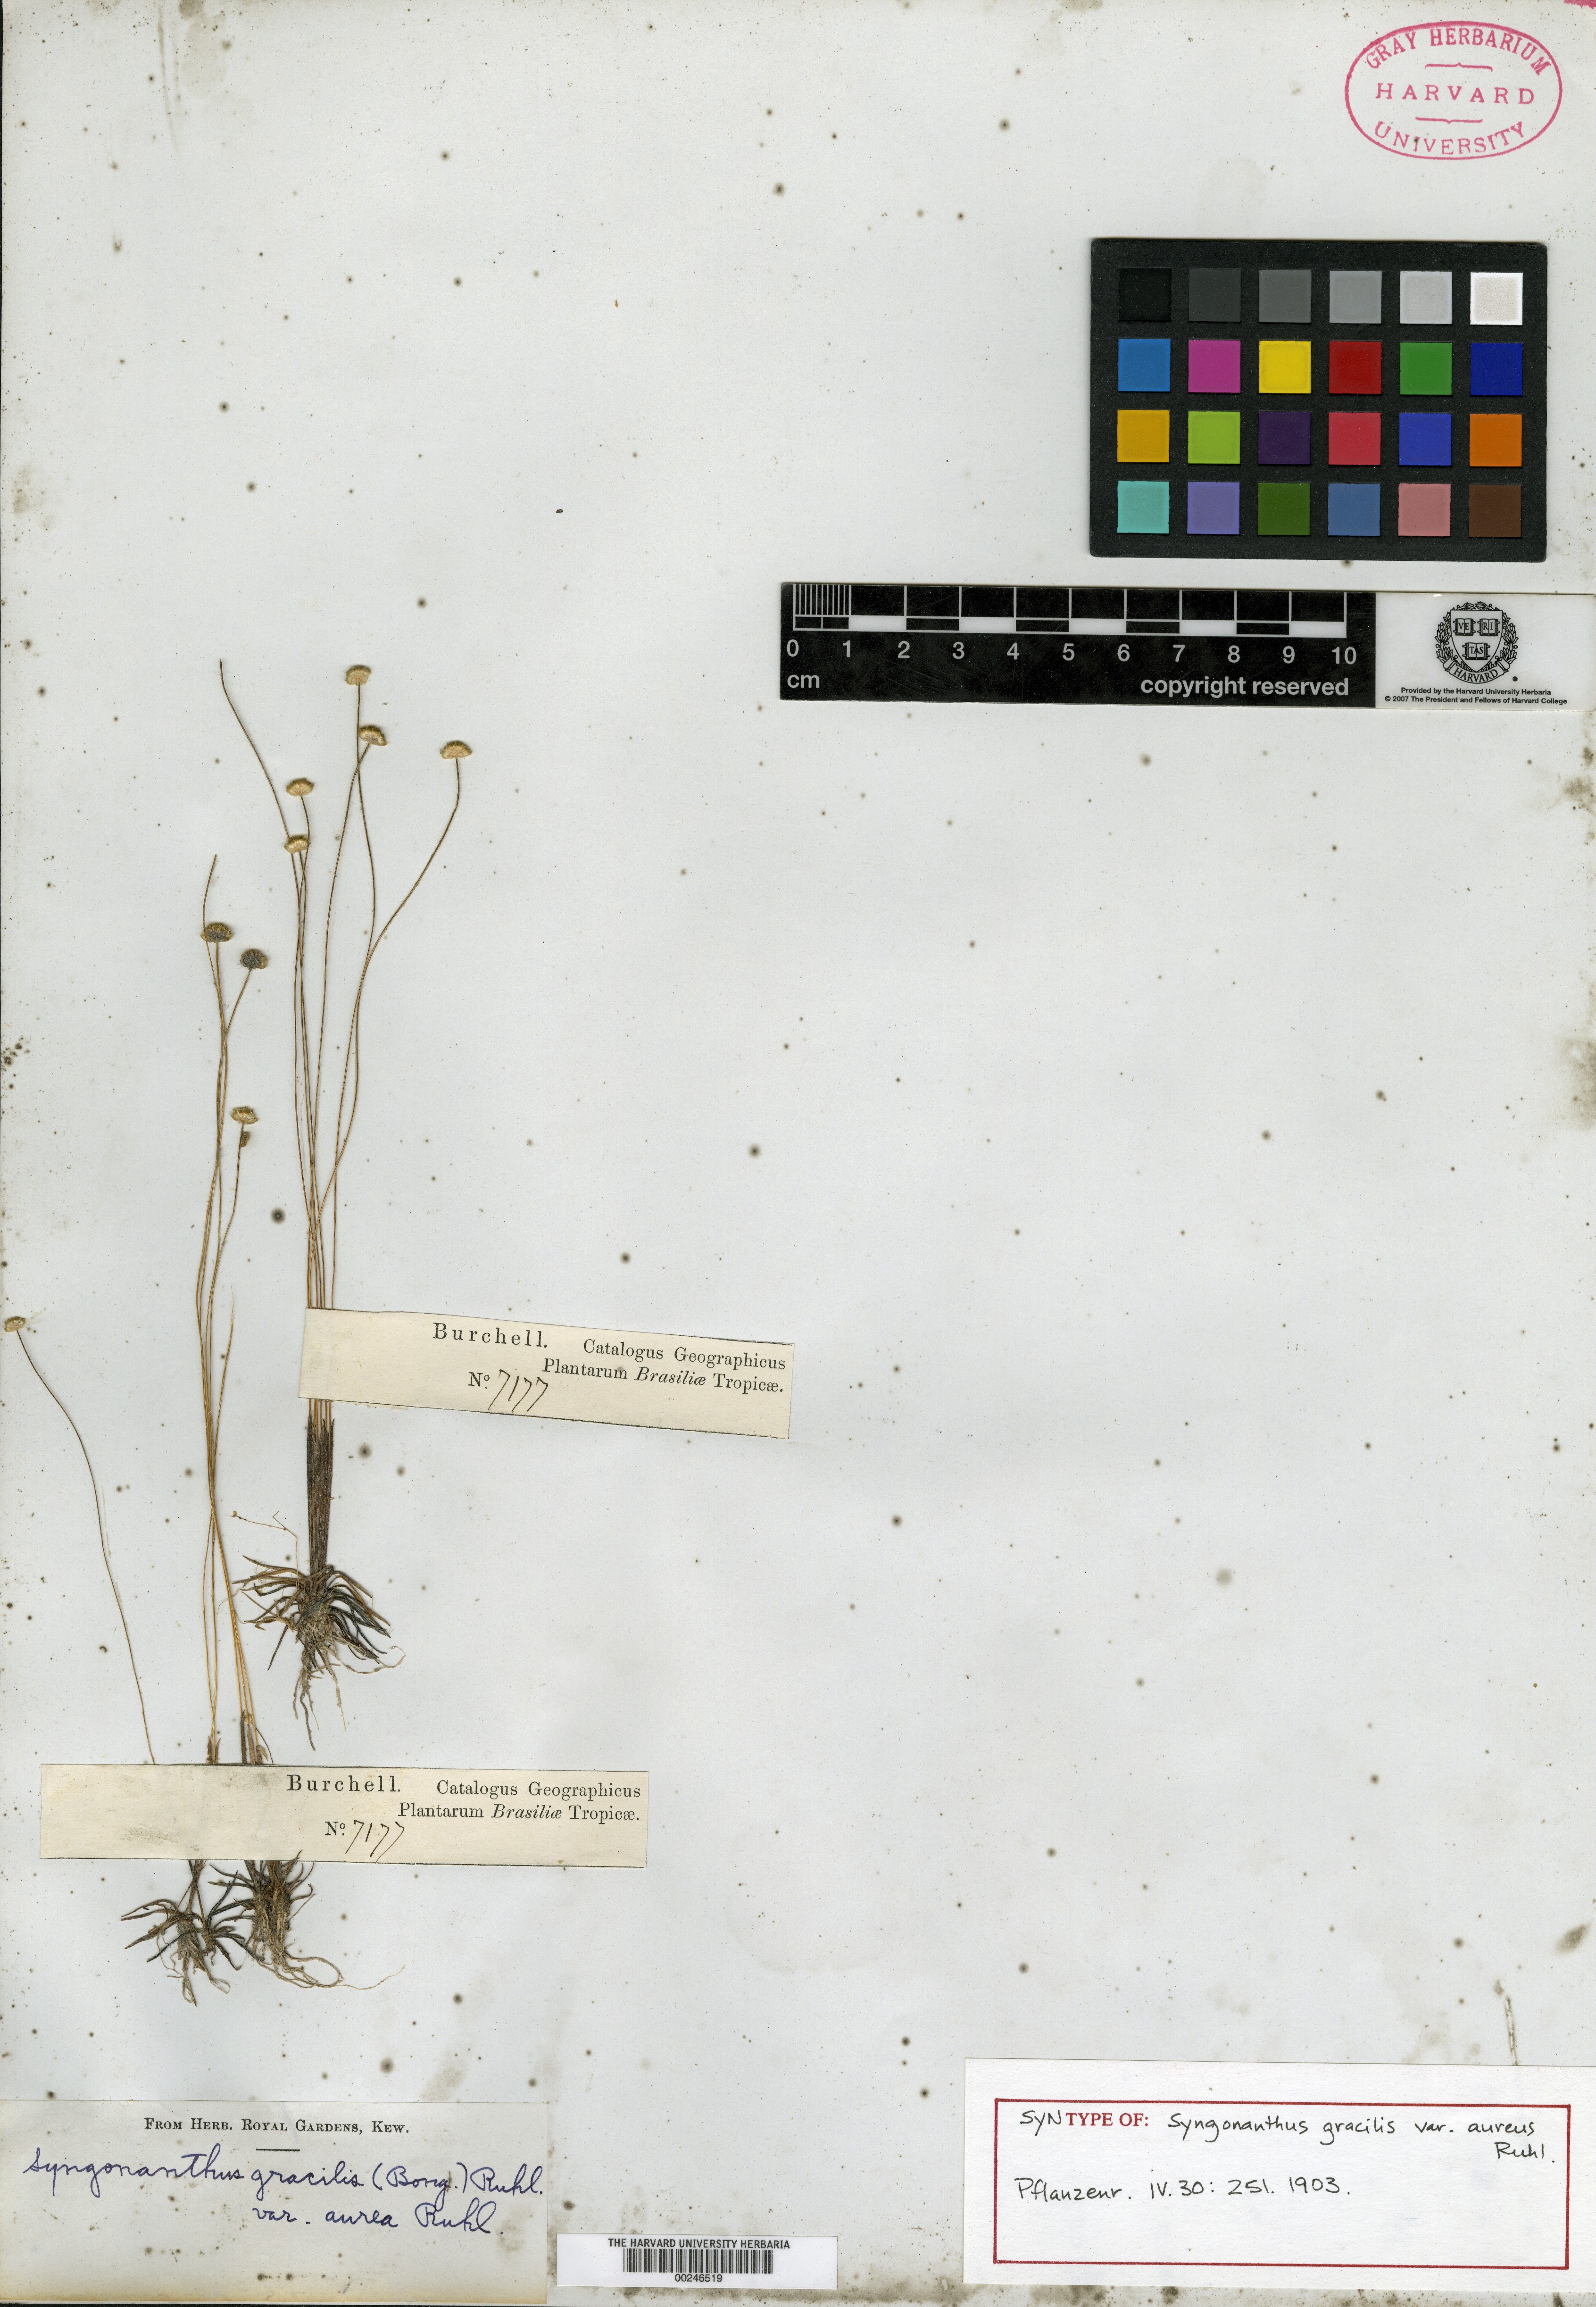 Syngonanthus yacuambensis image